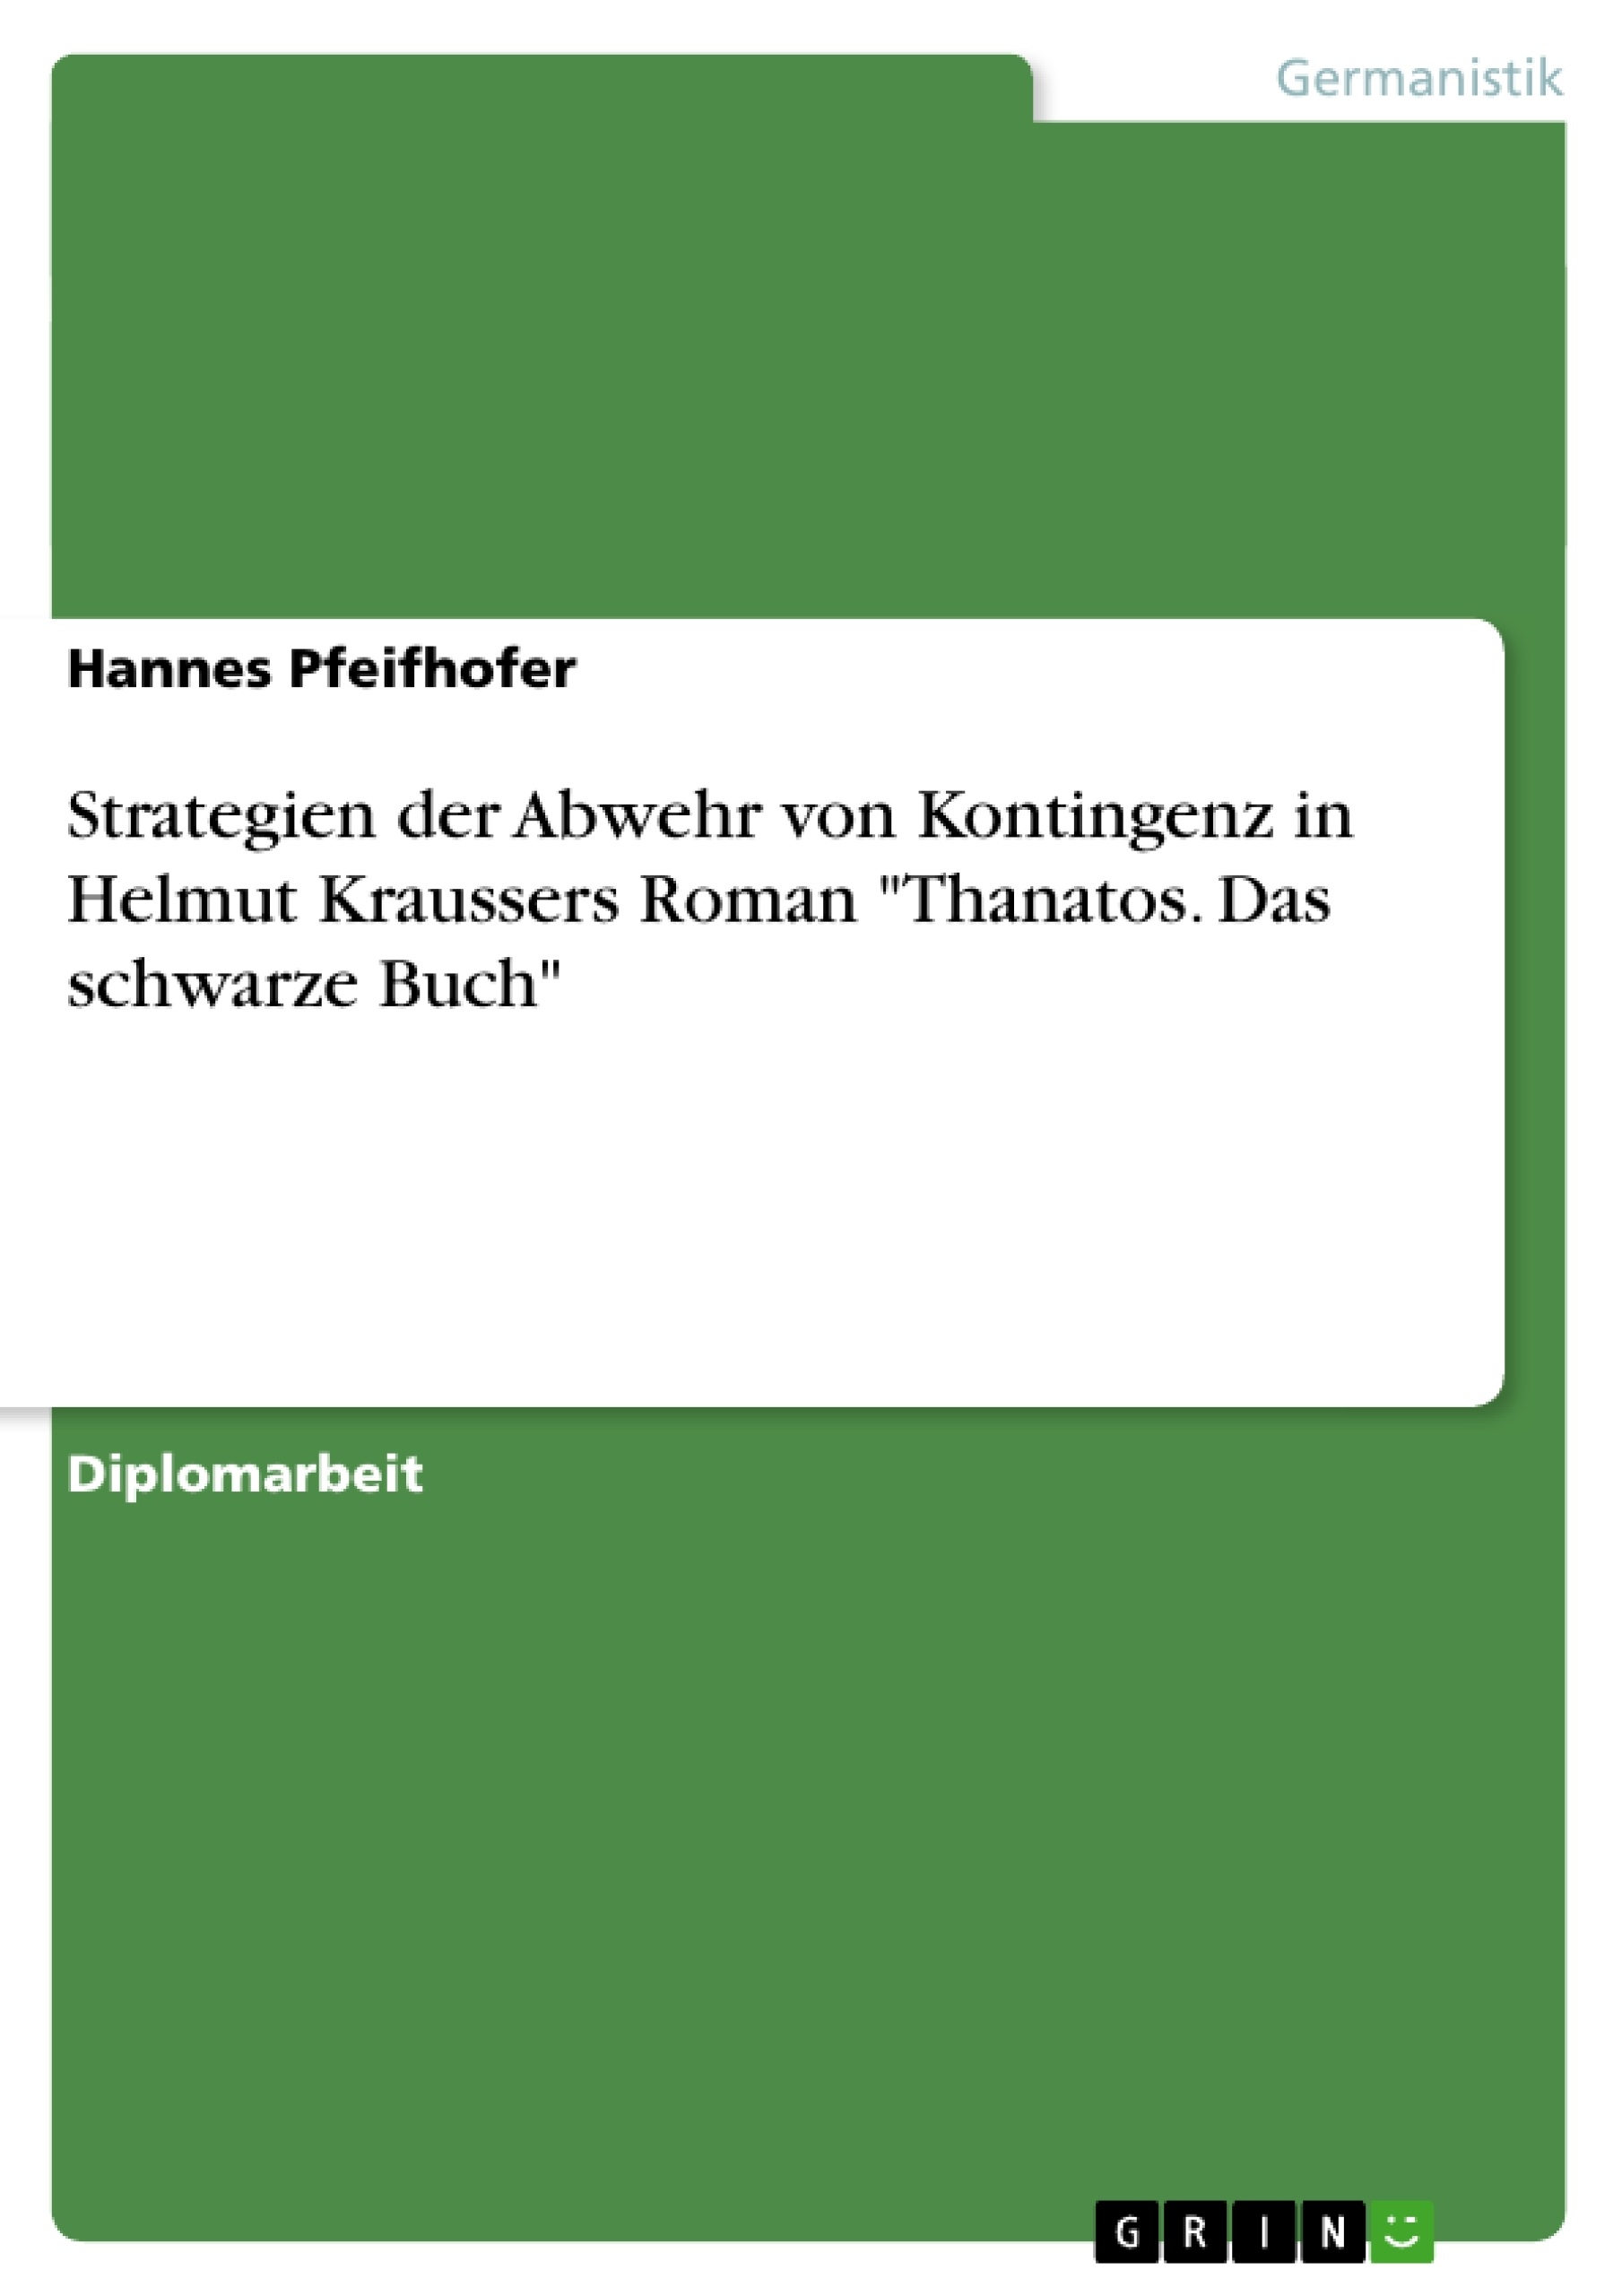 Titre: Strategien der Abwehr von Kontingenz in Helmut Kraussers Roman "Thanatos. Das schwarze Buch"